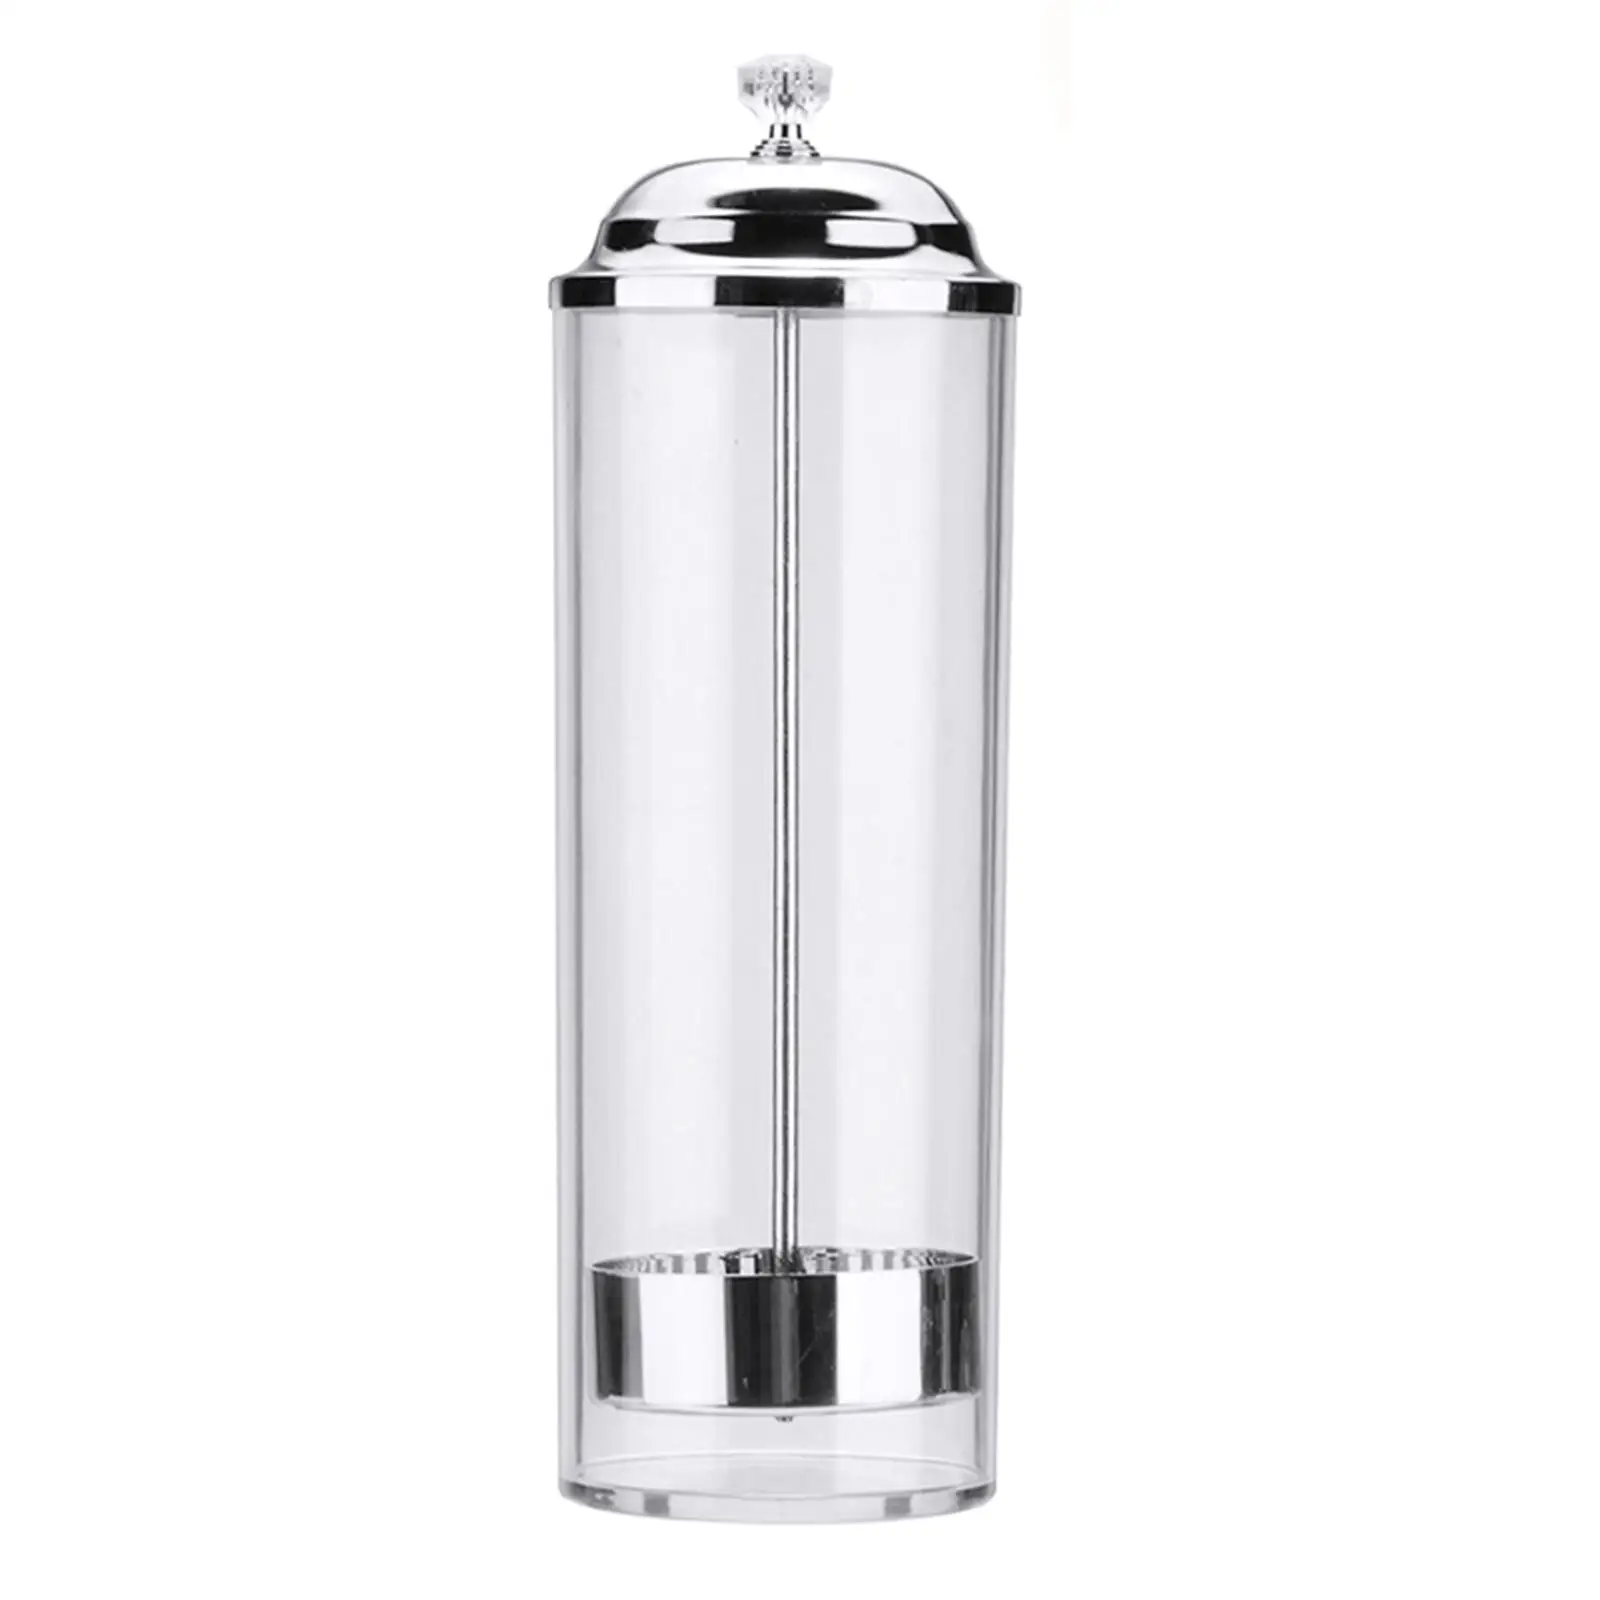 Vintage Straw Dispenser Glass Holder Jar Bottle Soda Drink Diner -  AliExpress